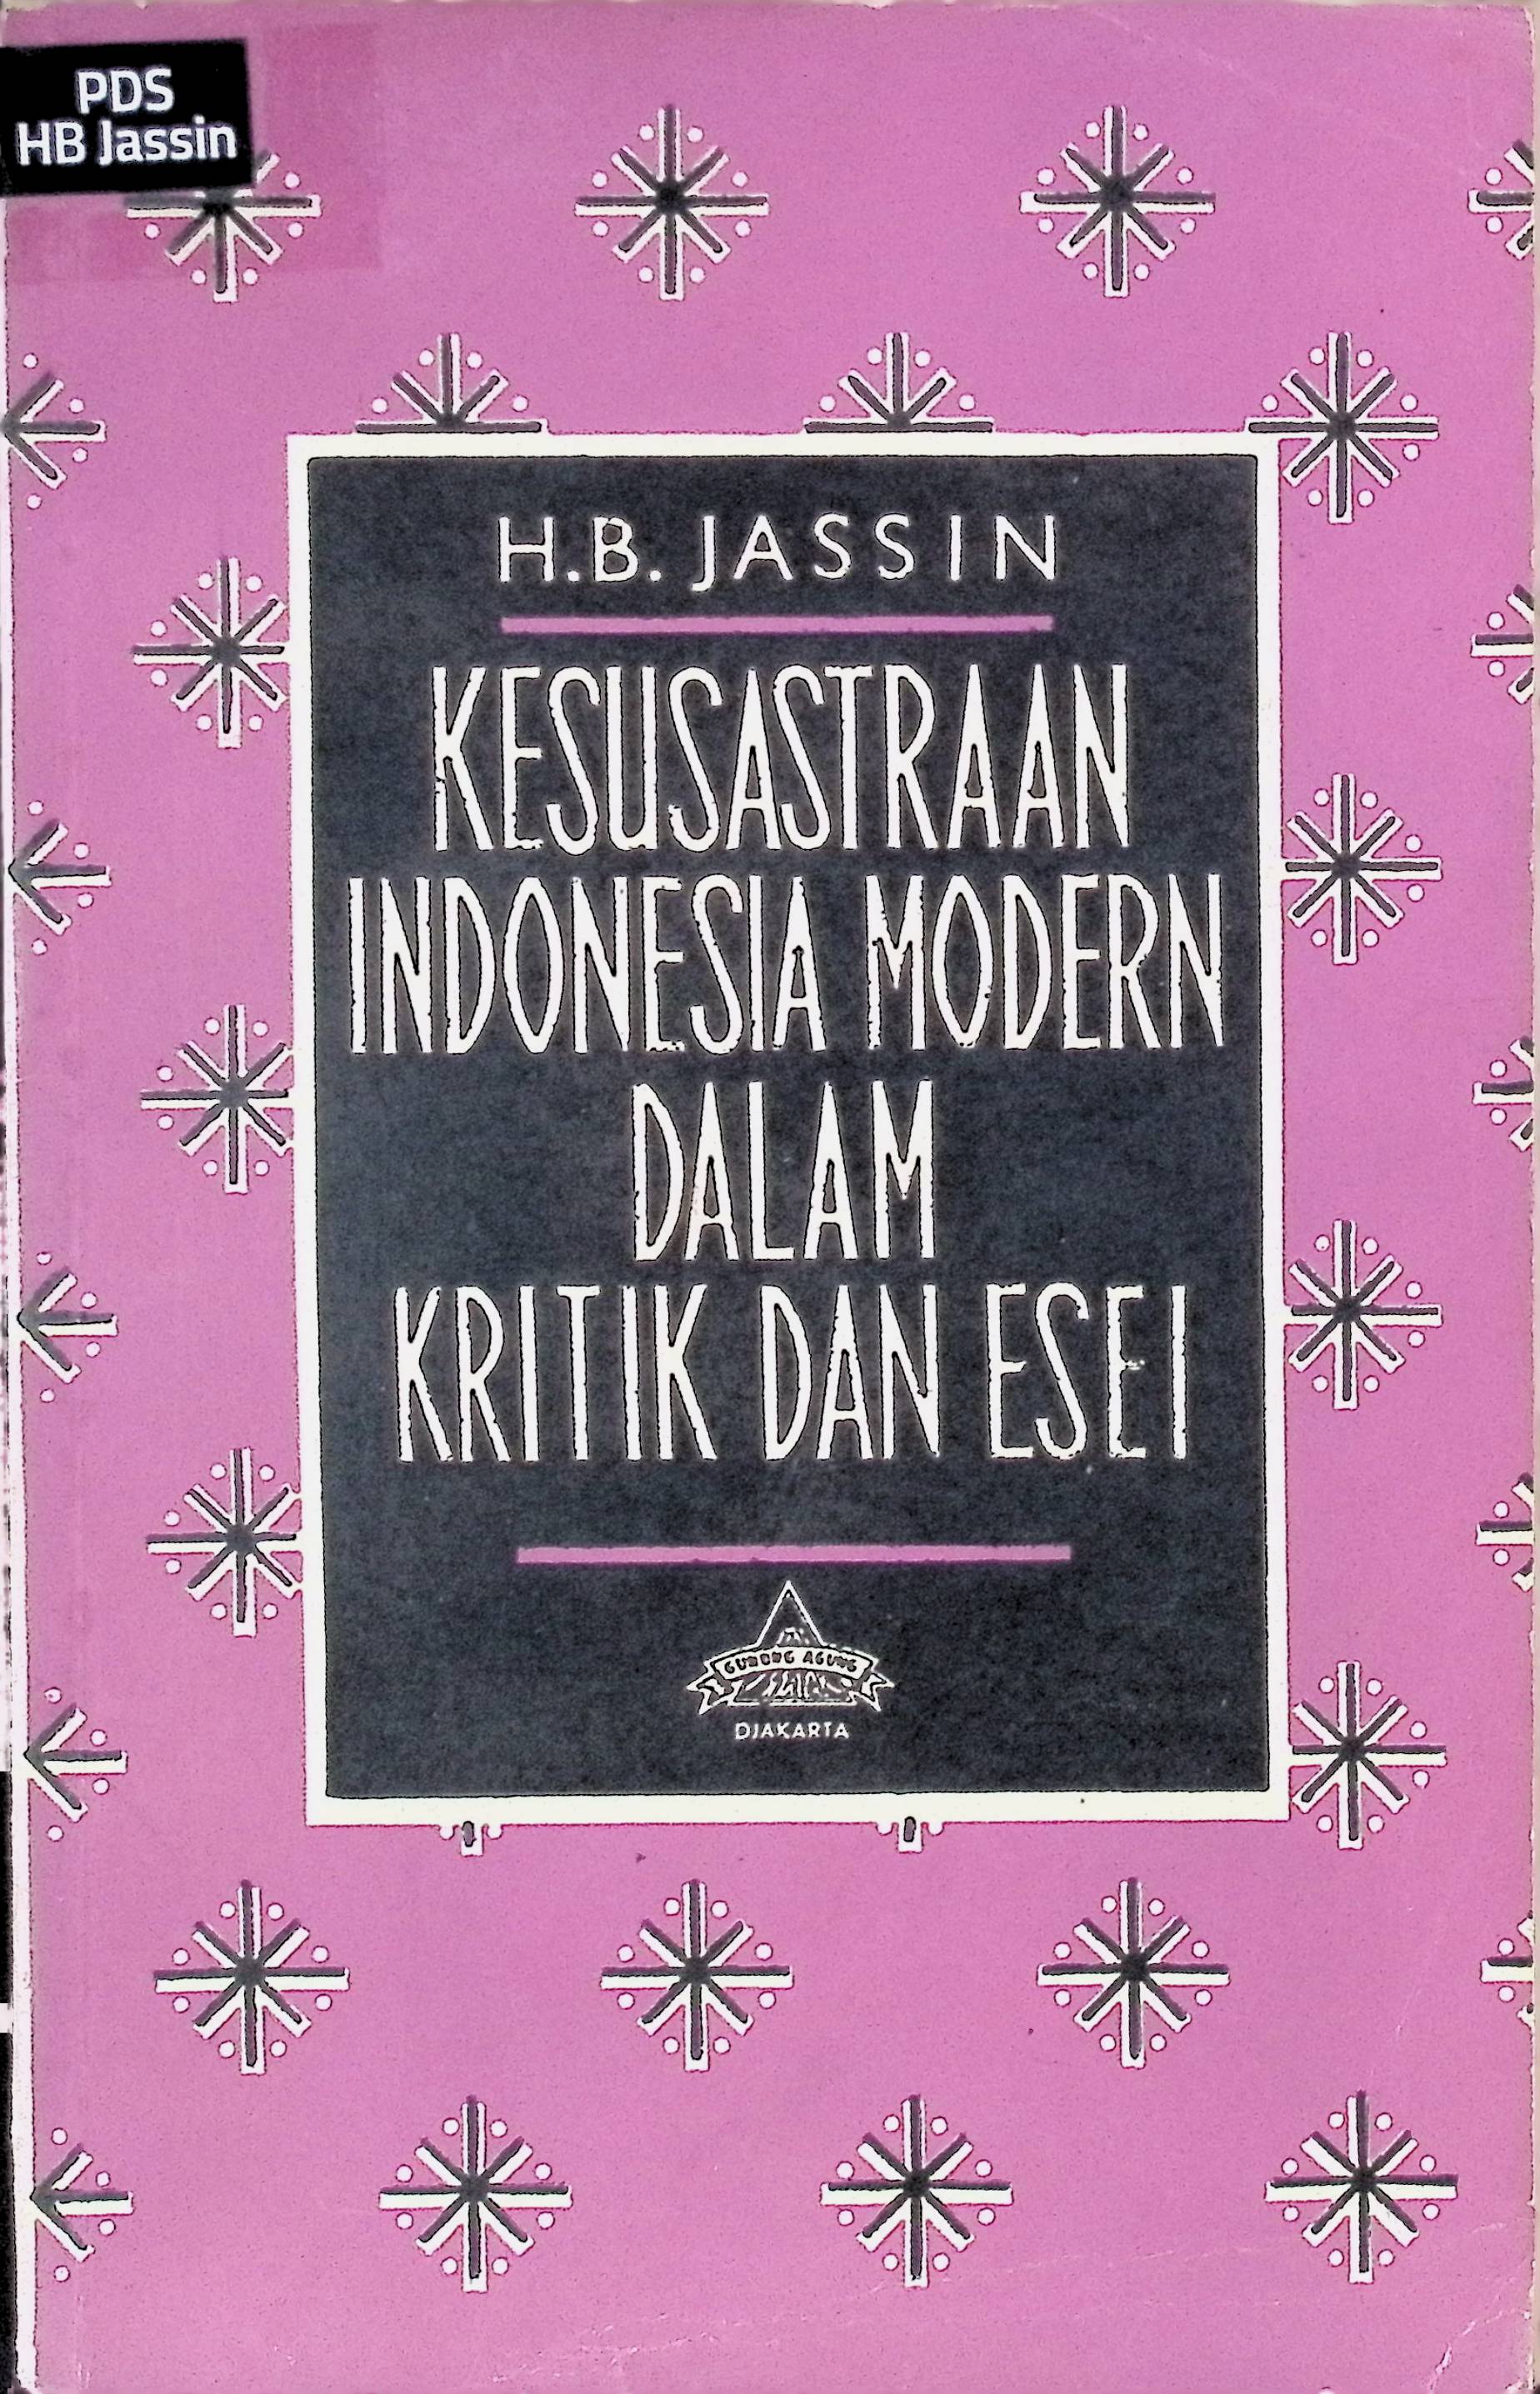 Kesusastraan Indonesia Modern dalam Kritik dan Esei IV